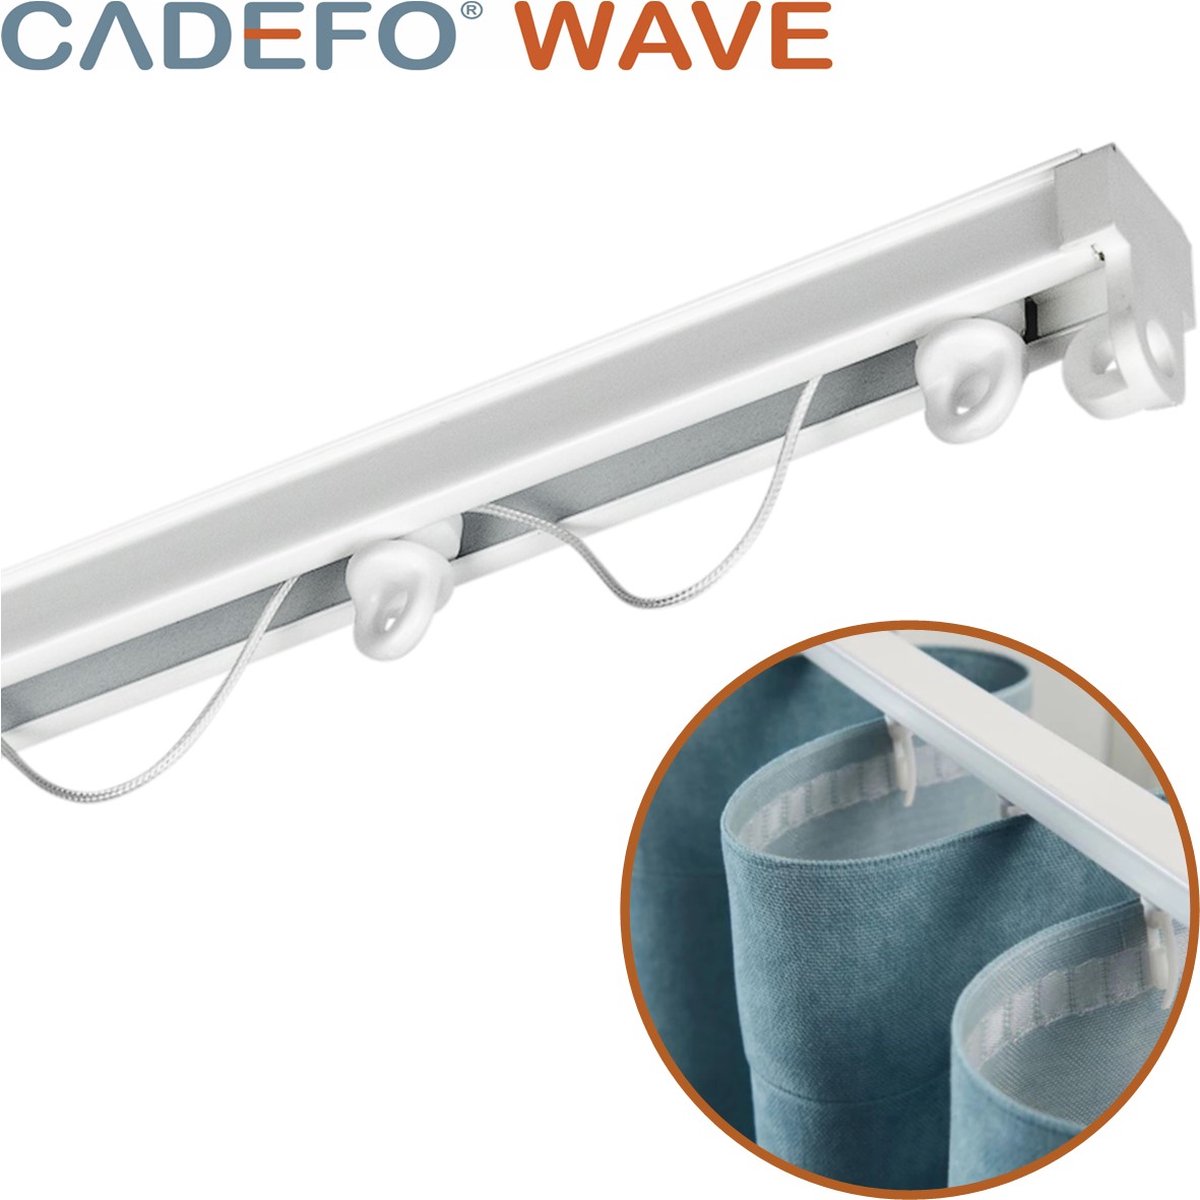 CADEFO WAVE (351 - 400 cm) Gordijnrails - Compleet op maat! - UIT 1 STUK - Leverbaar tot 6 meter - Plafondbevestiging - Lengte 374 cm